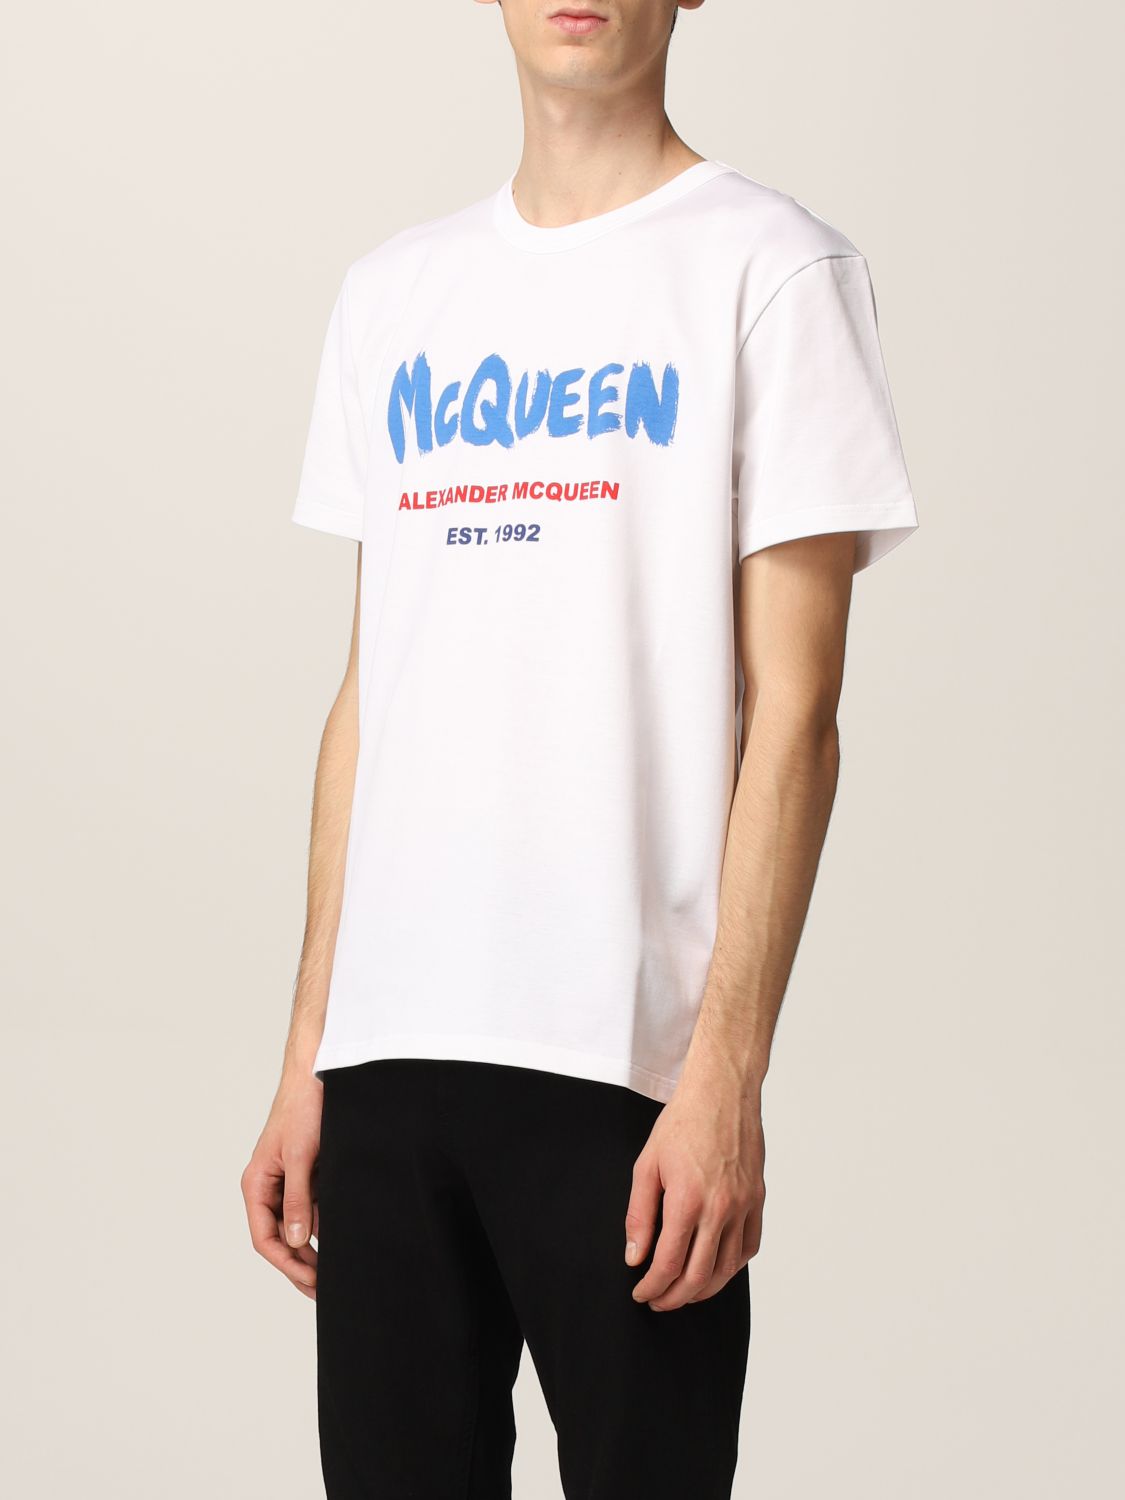 Alexander McQueen t-shirt with logo